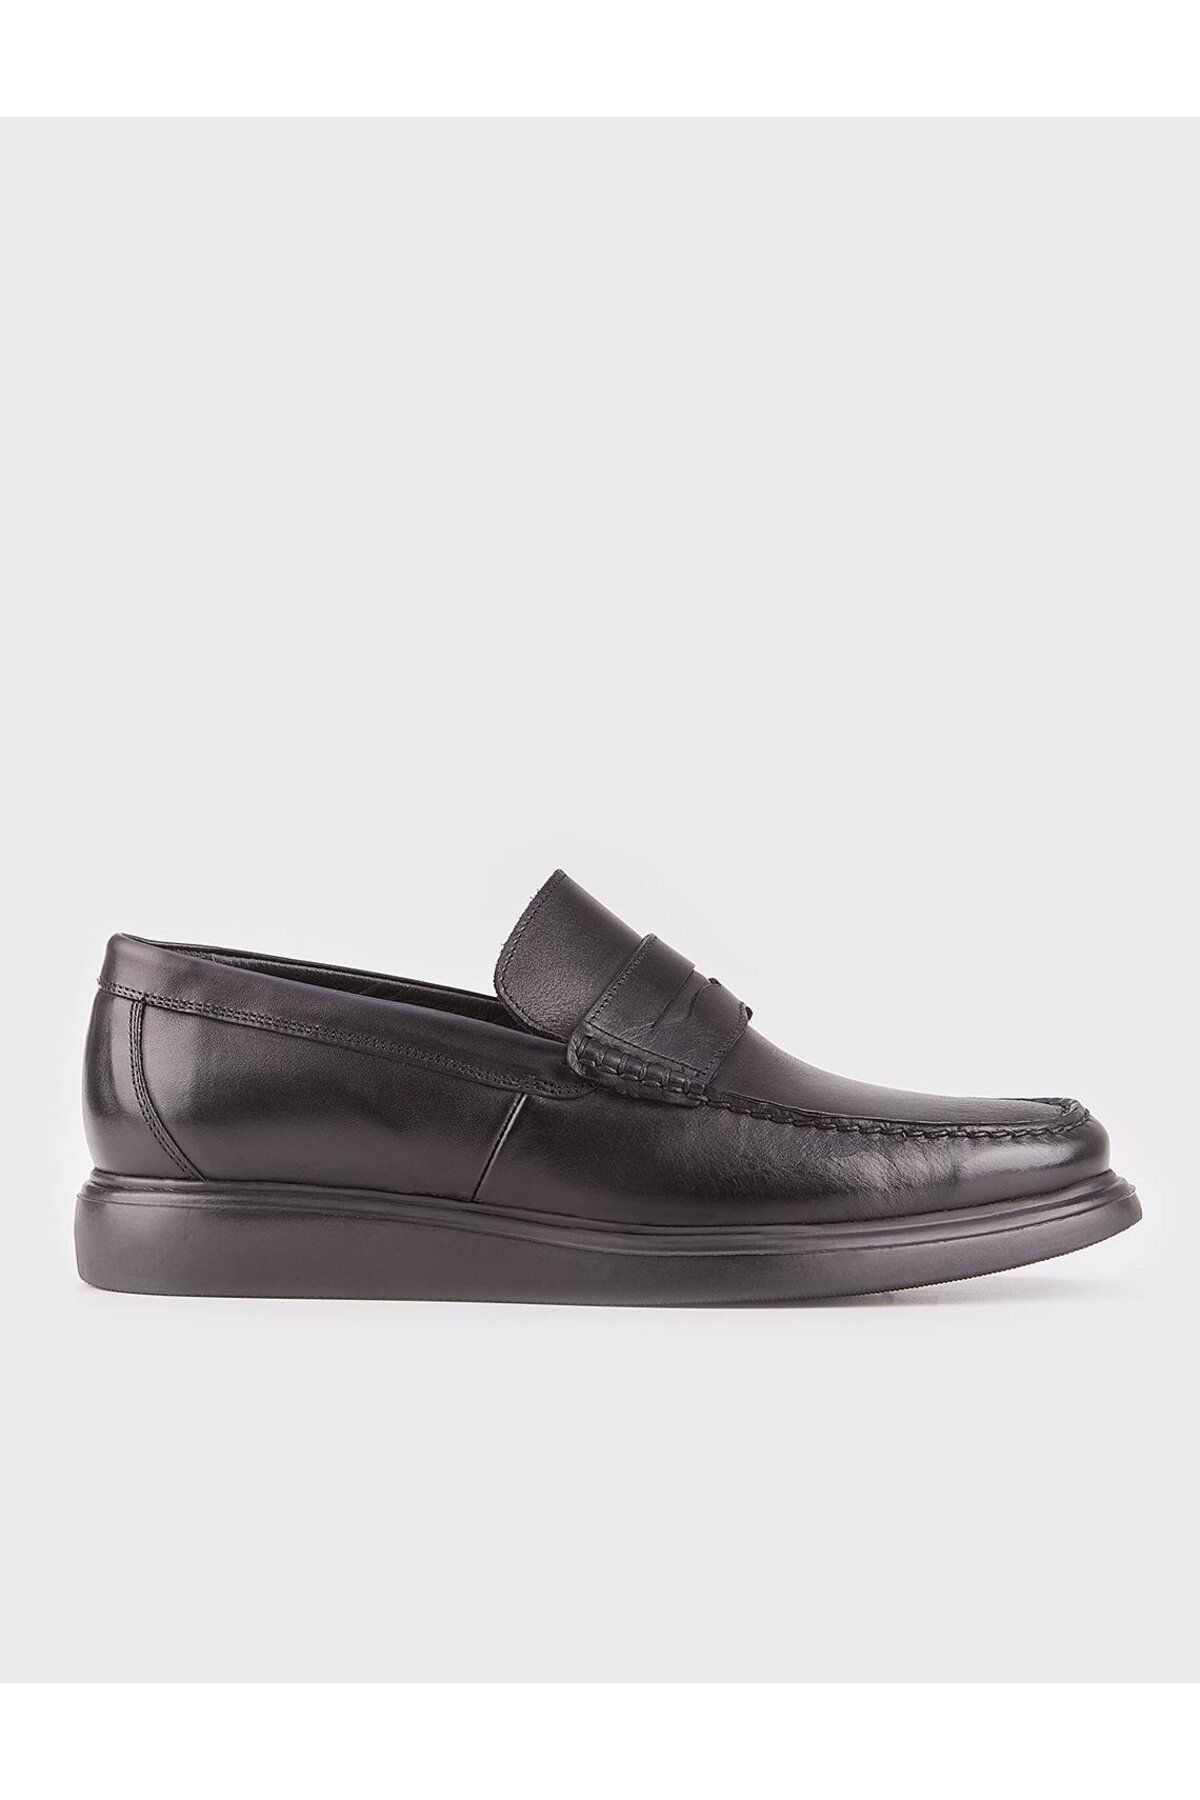 Cabani Hakiki Deri Siyah Kemerli Erkek Günlük Loafer Ayakkabı